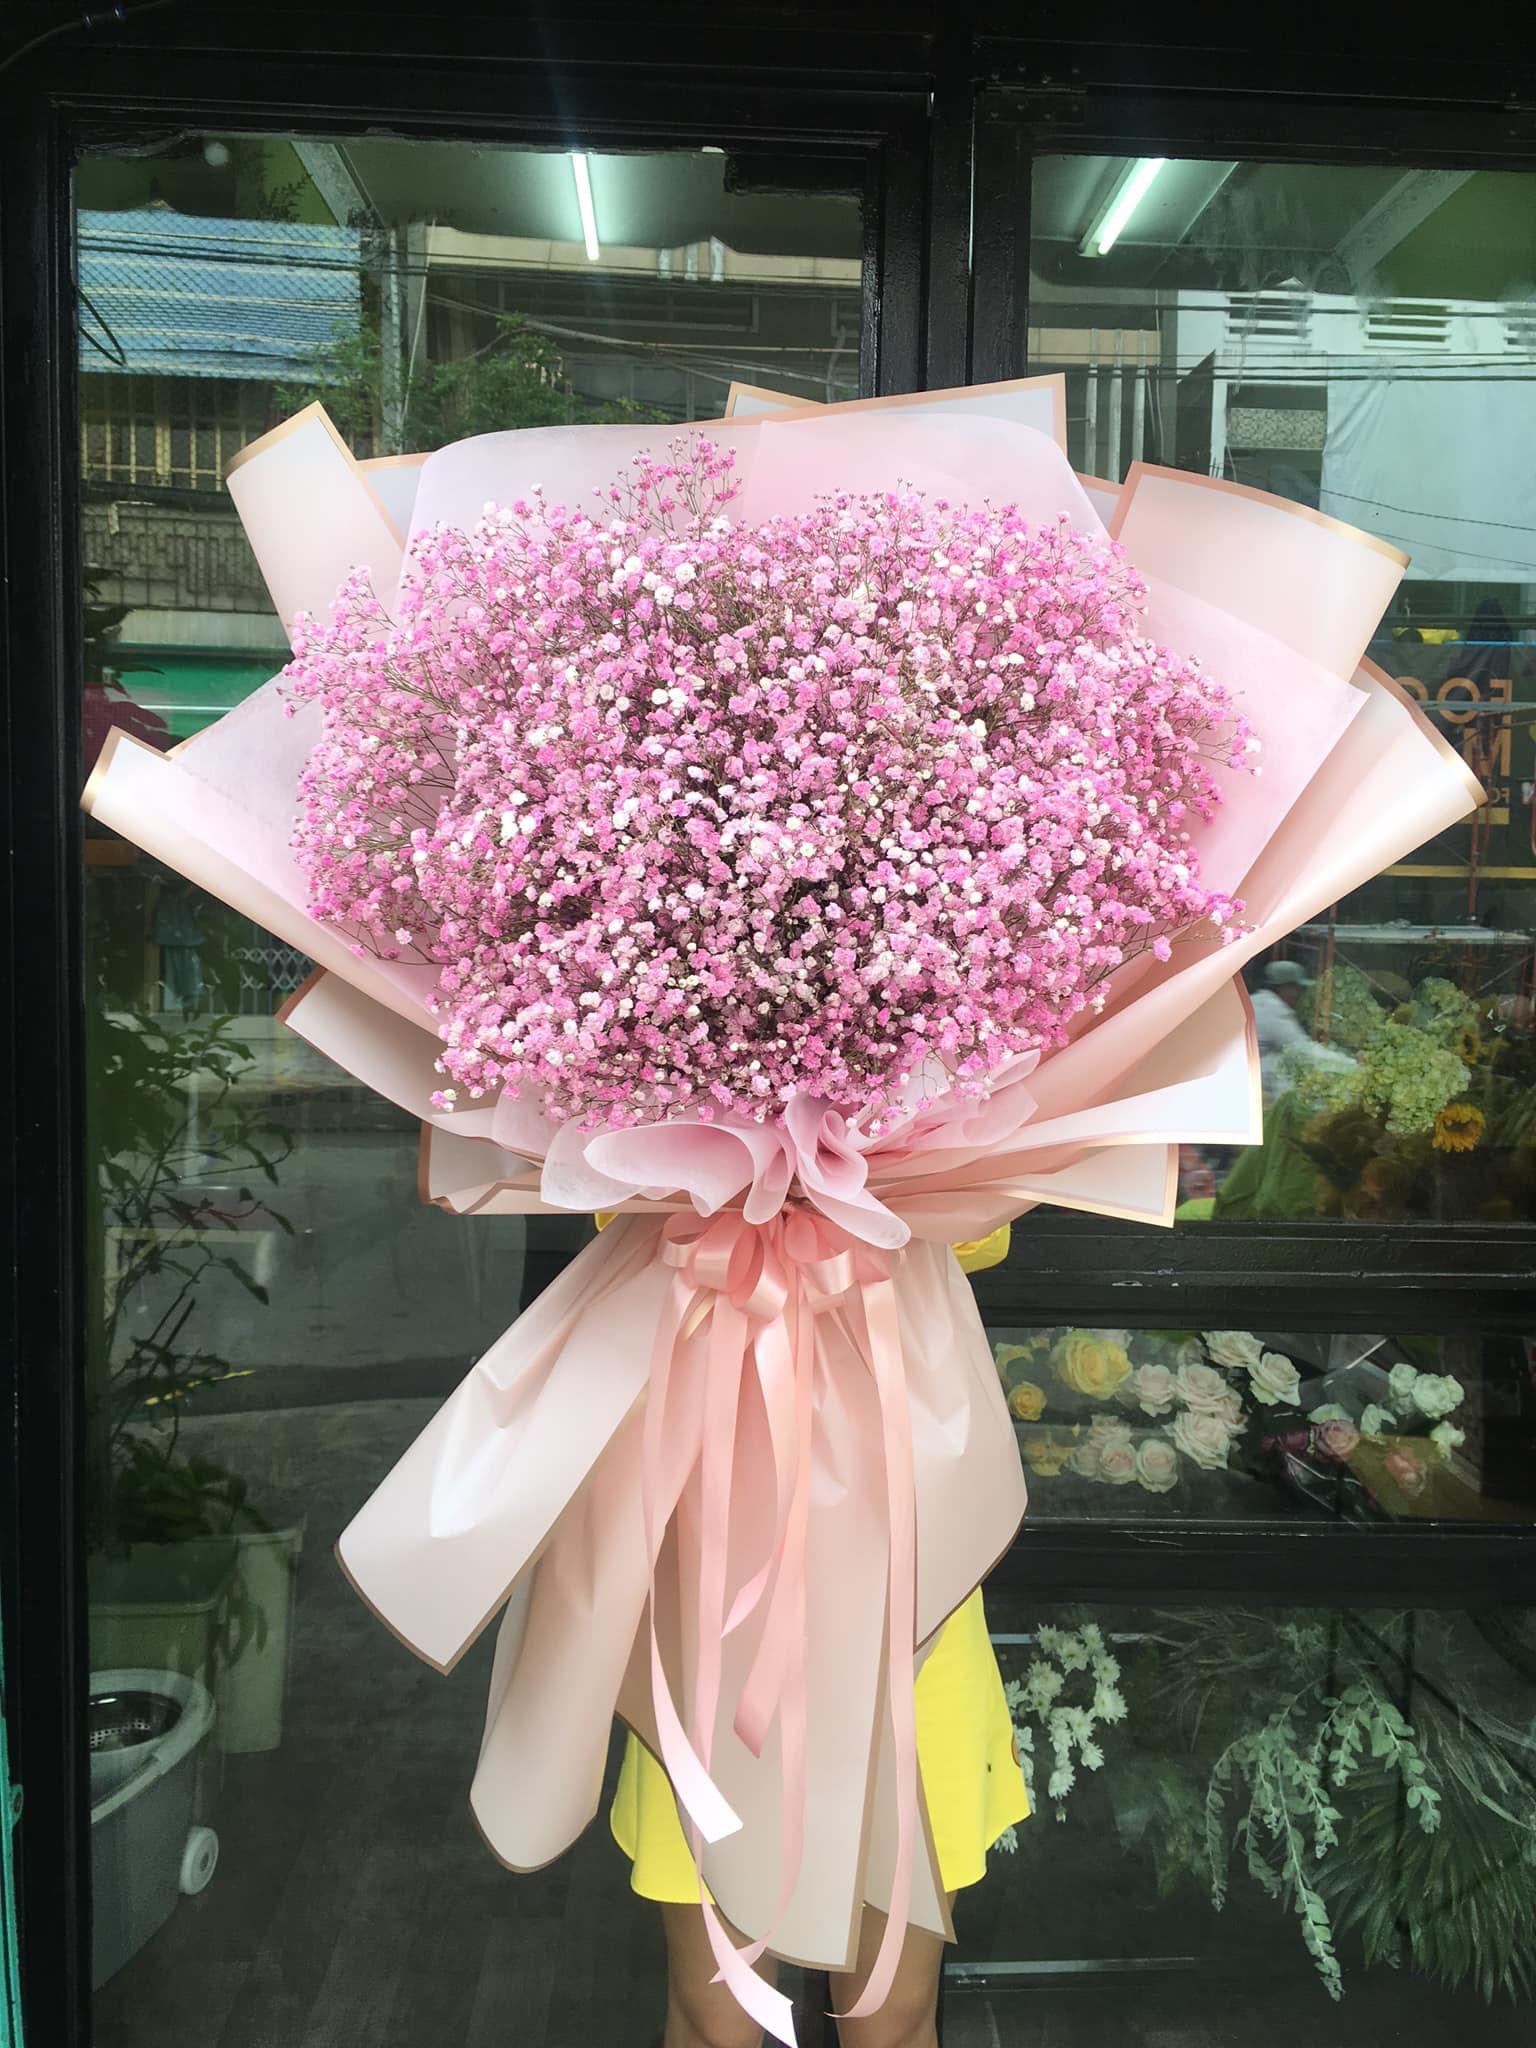 Shop hoa tươi quận Tân Bình giá rẻ đẹp và chất lượng tại Hồ Chí Minh